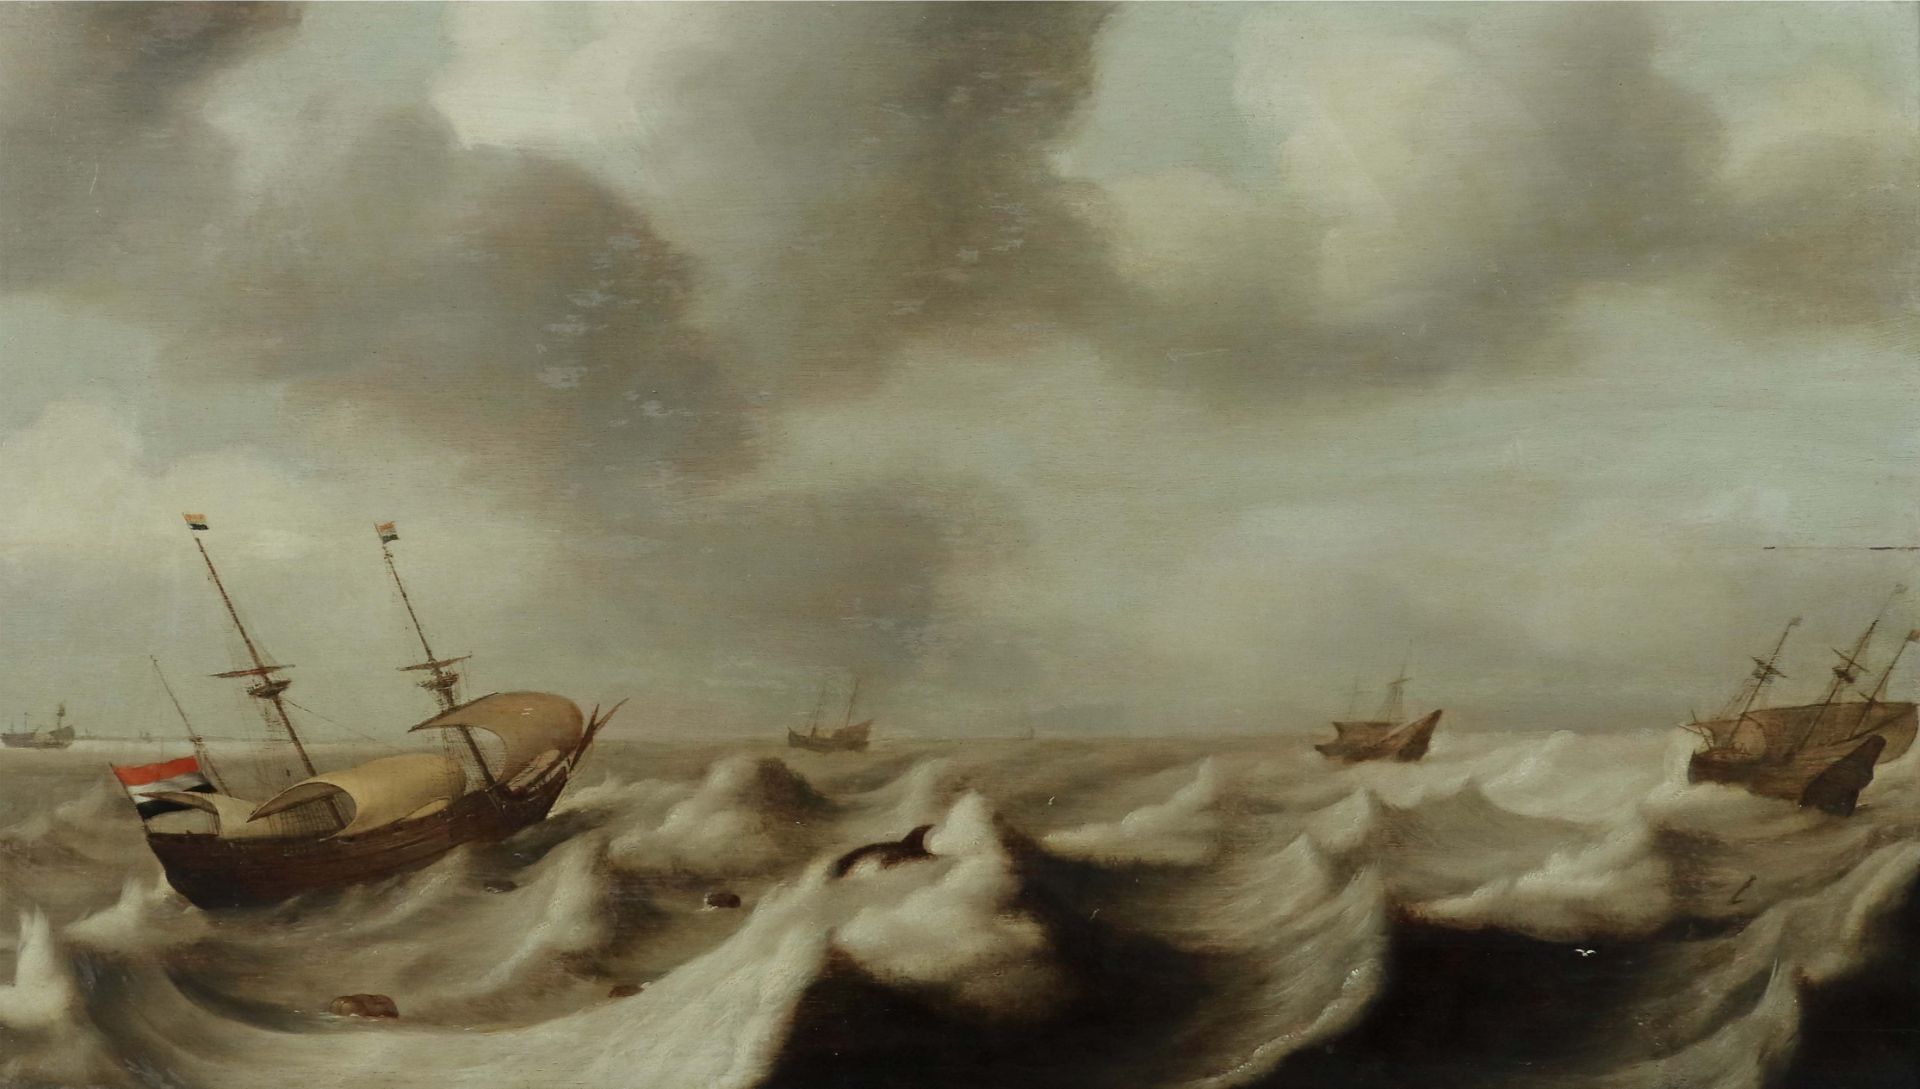 Vlieger, Simon de Rotterdam 1601 -